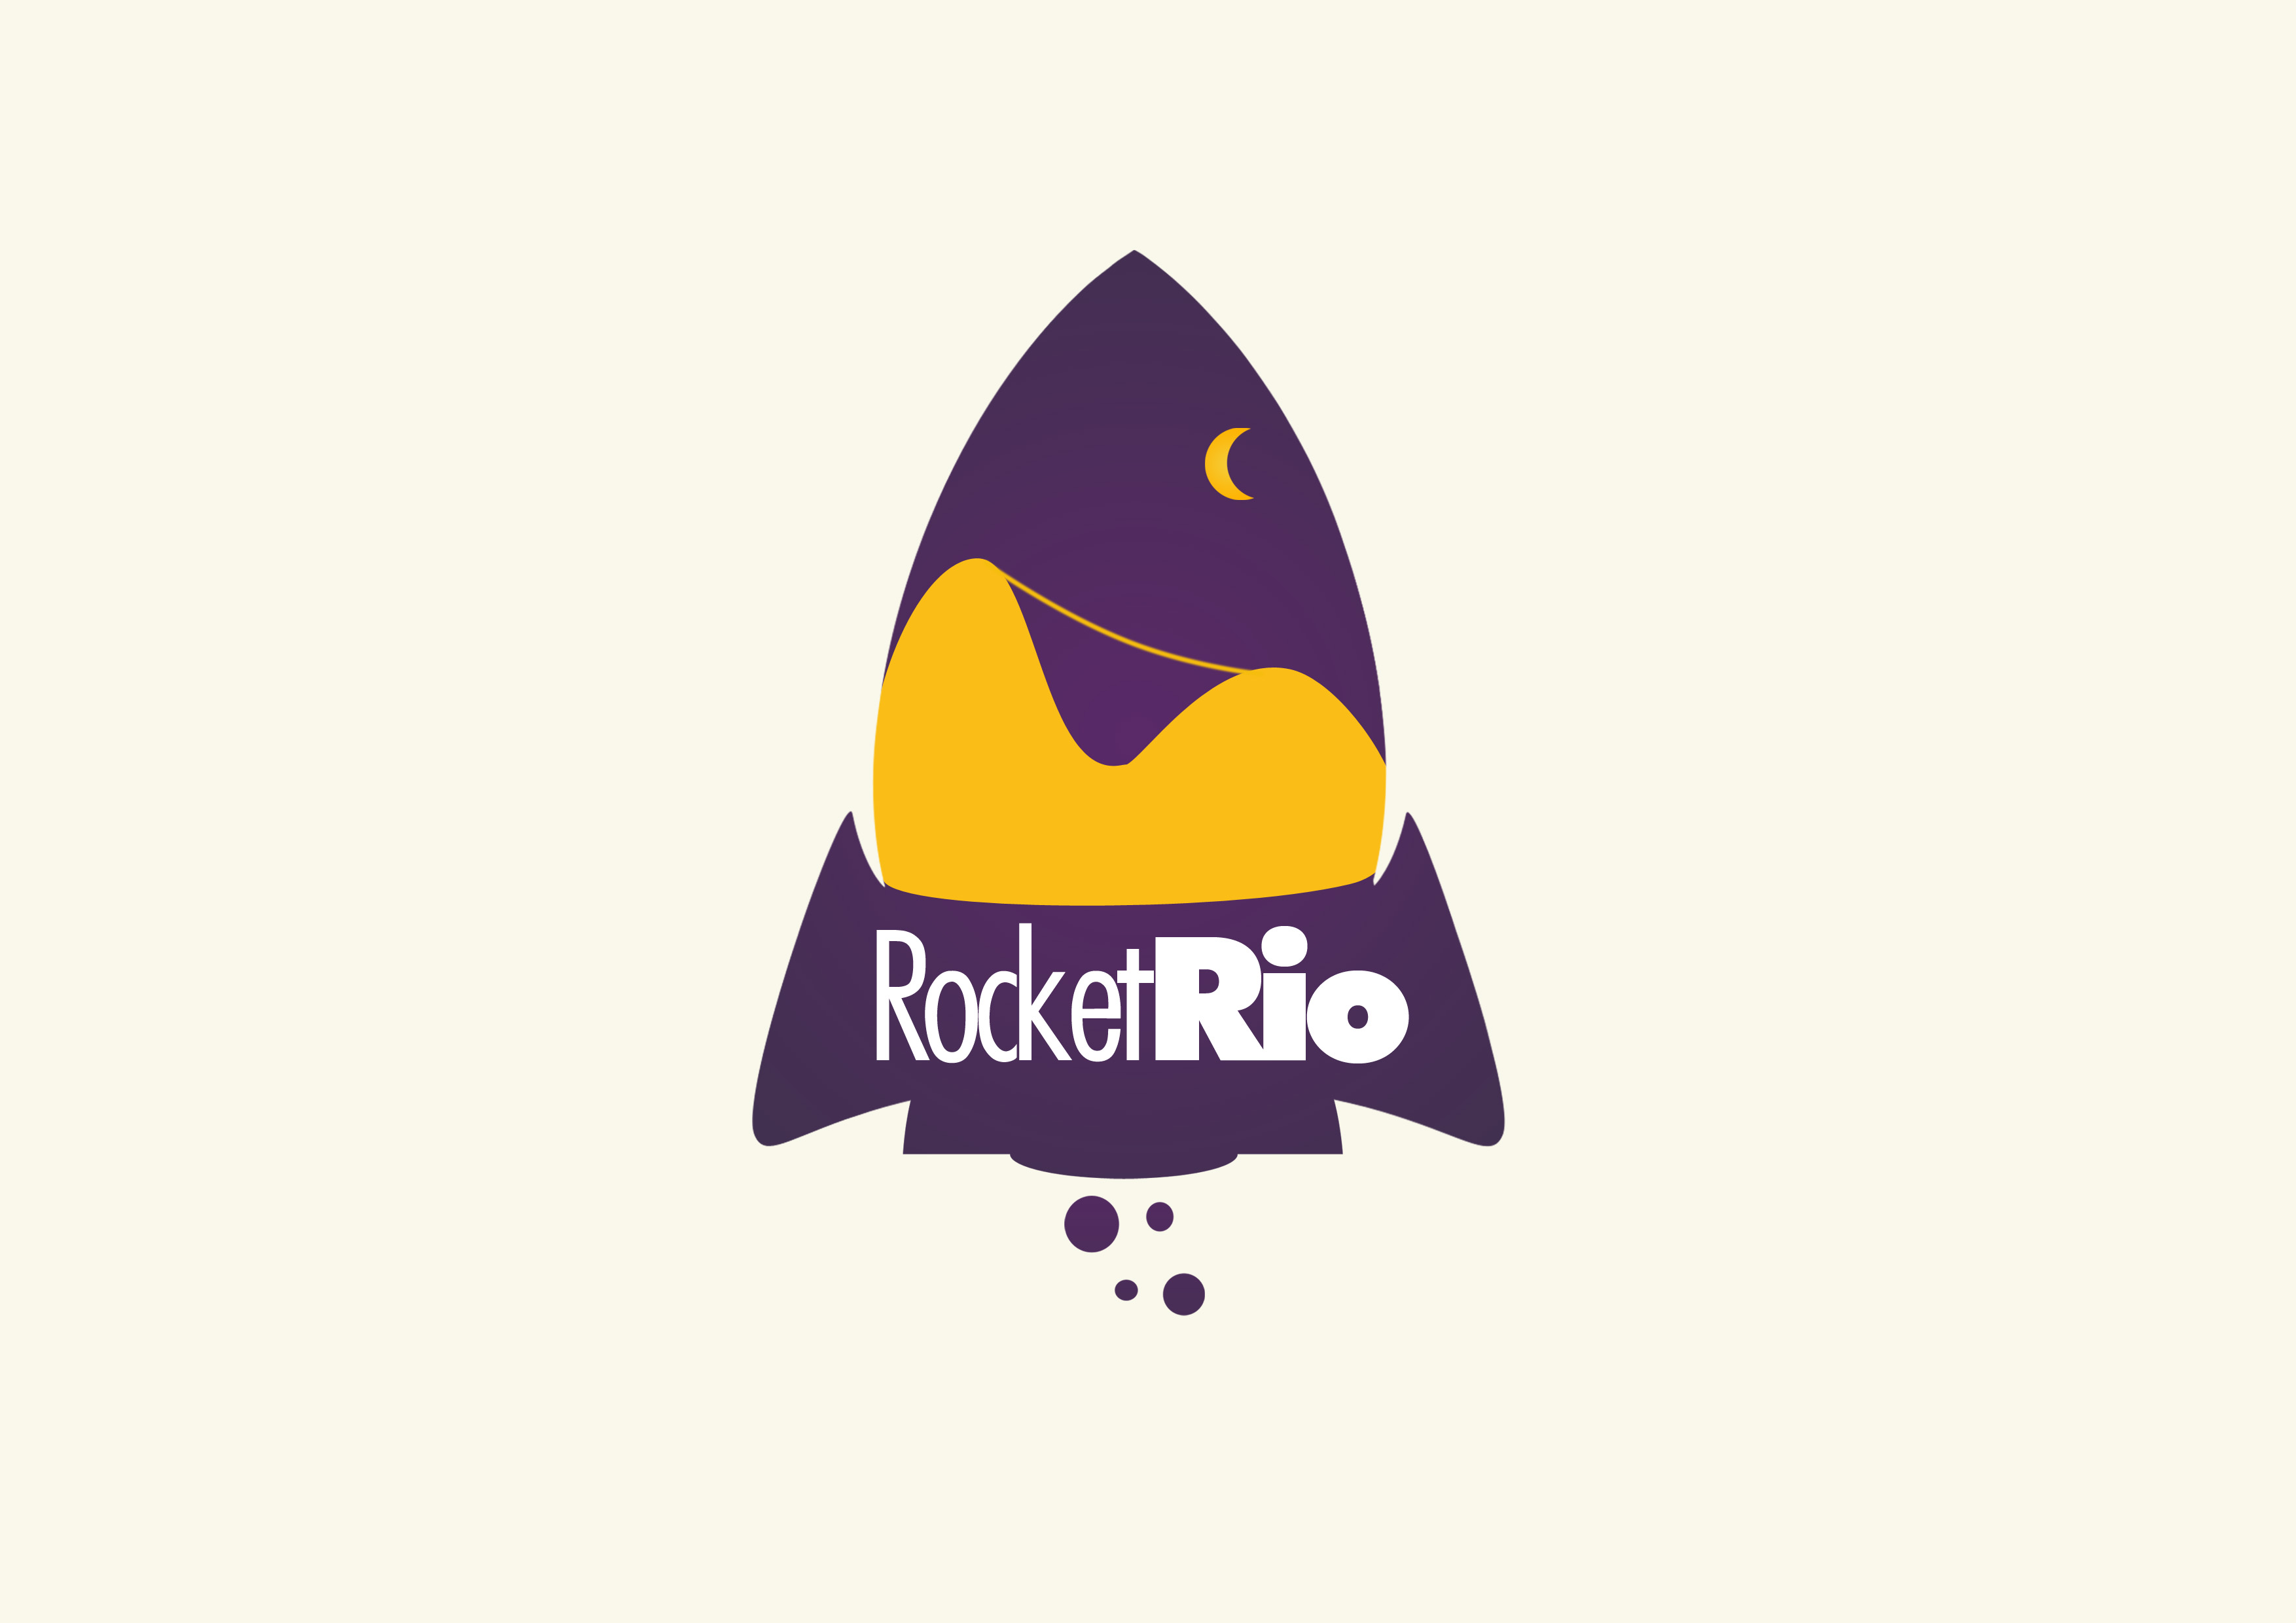 RocketRio